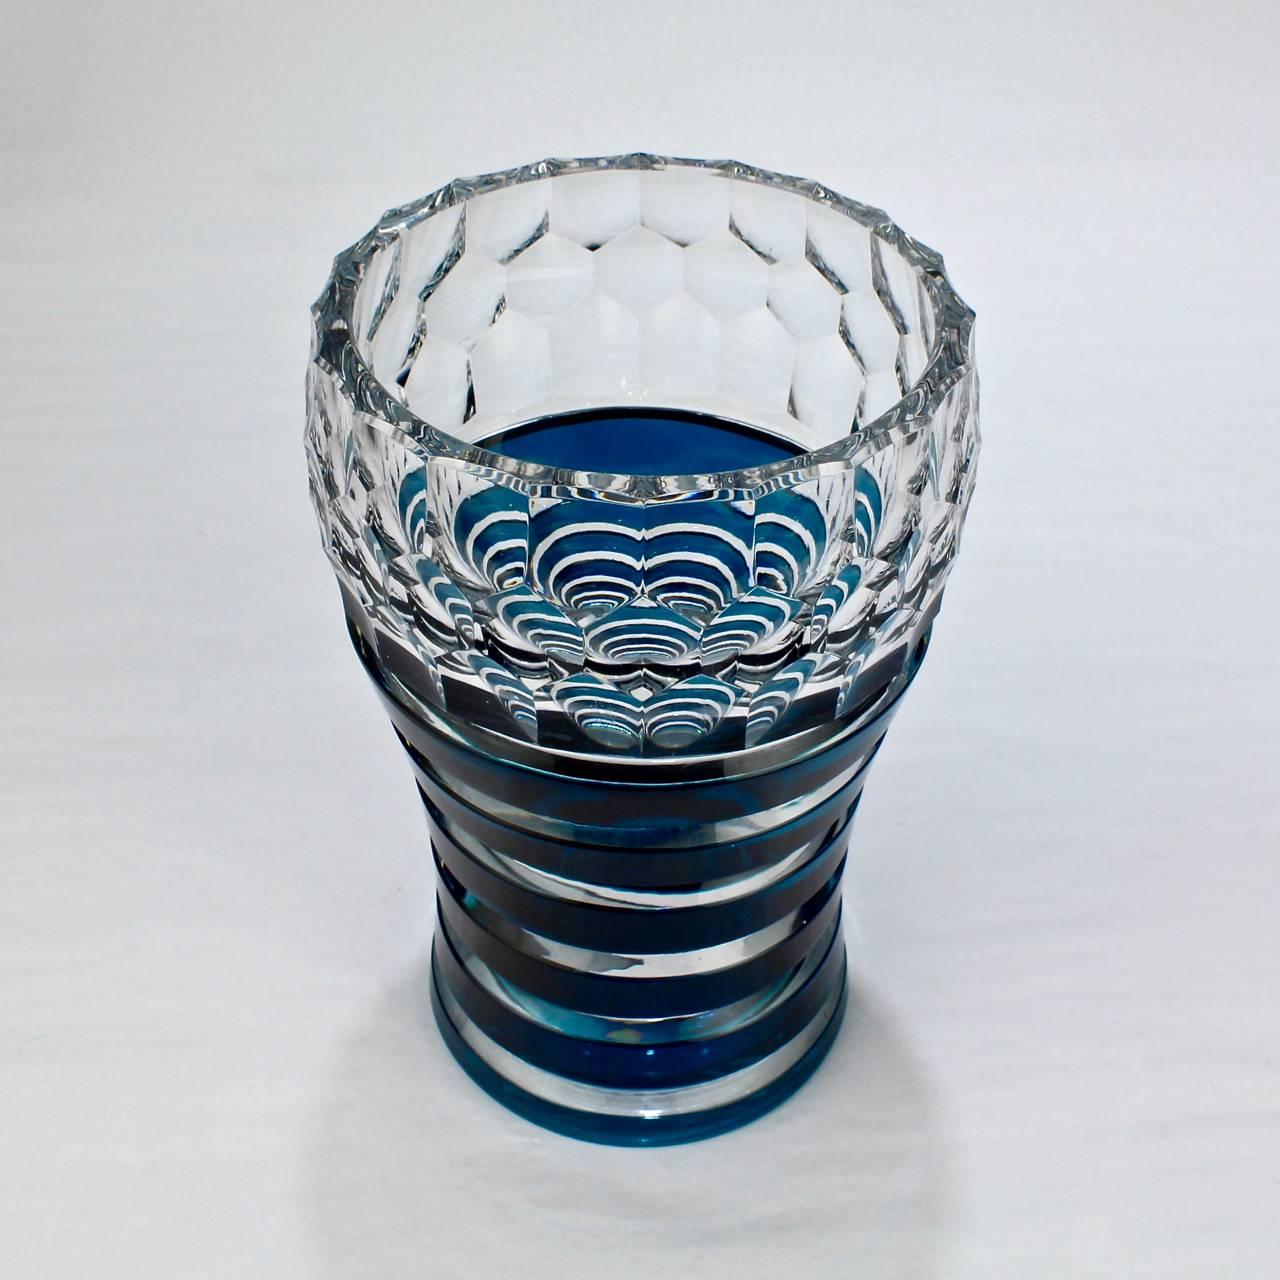 Eine schöne Vase mit Franckenthal-Muster aus dem Val Saint Lambert im Art déco-Stil.

Mit überschnittenen Bändern unter einem optisch geschnittenen oberen Rand. Die Farbe der Overlay-Bänder reicht von einem dunklen Blau bis zu einem Grün bei